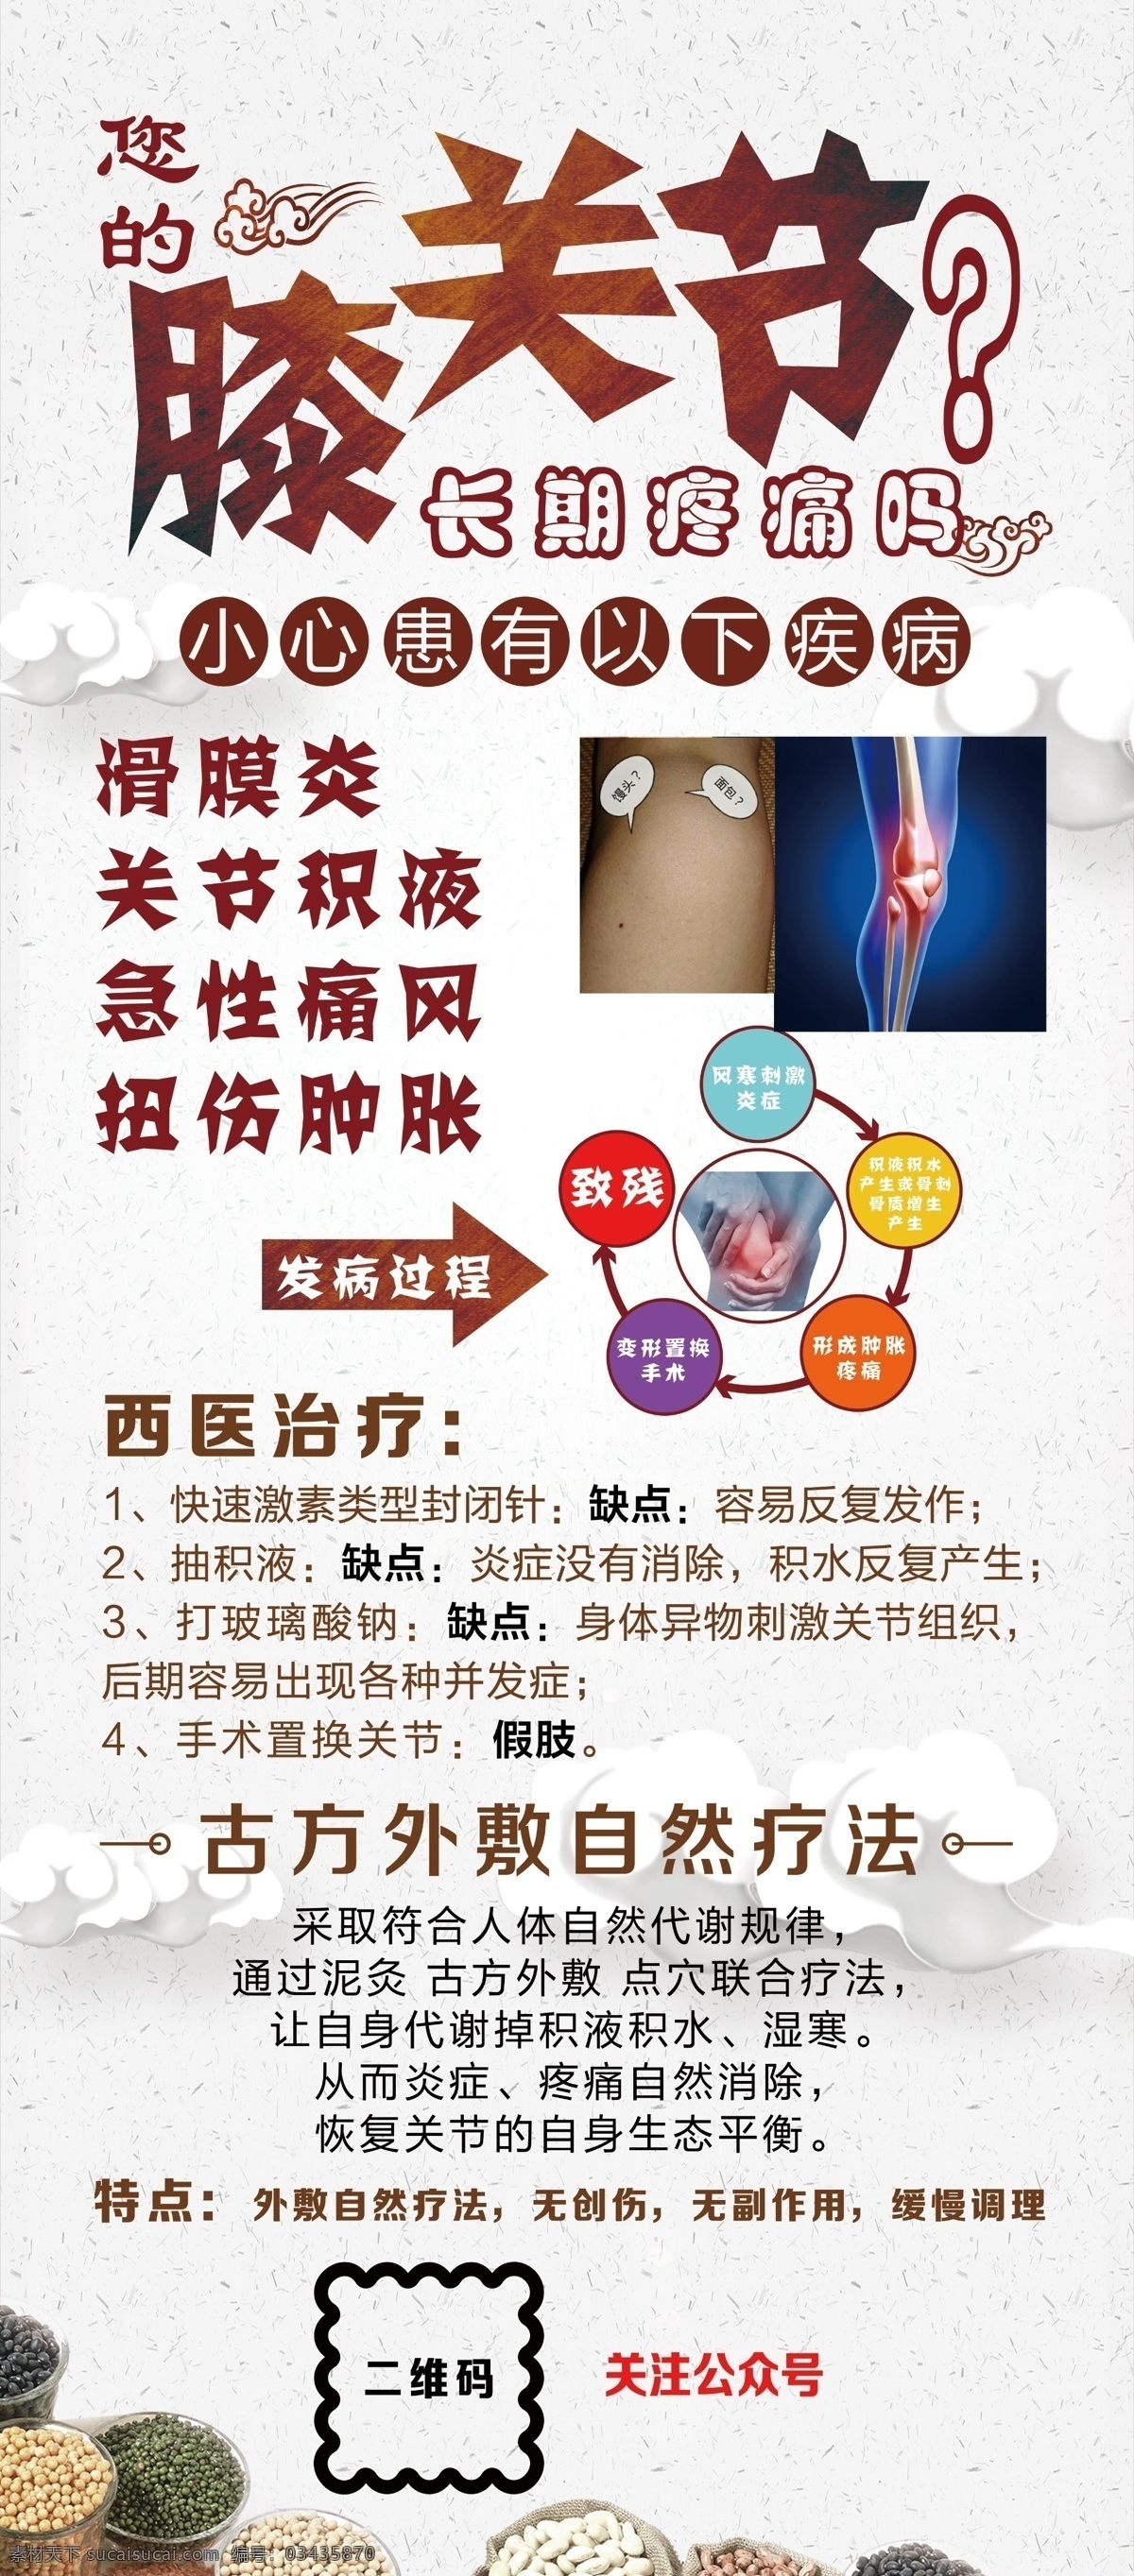 漆关节 滑膜炎 关节积液 急性痛风 扭伤肿胀 中医 展架 中医展架 膝关节 展板模板